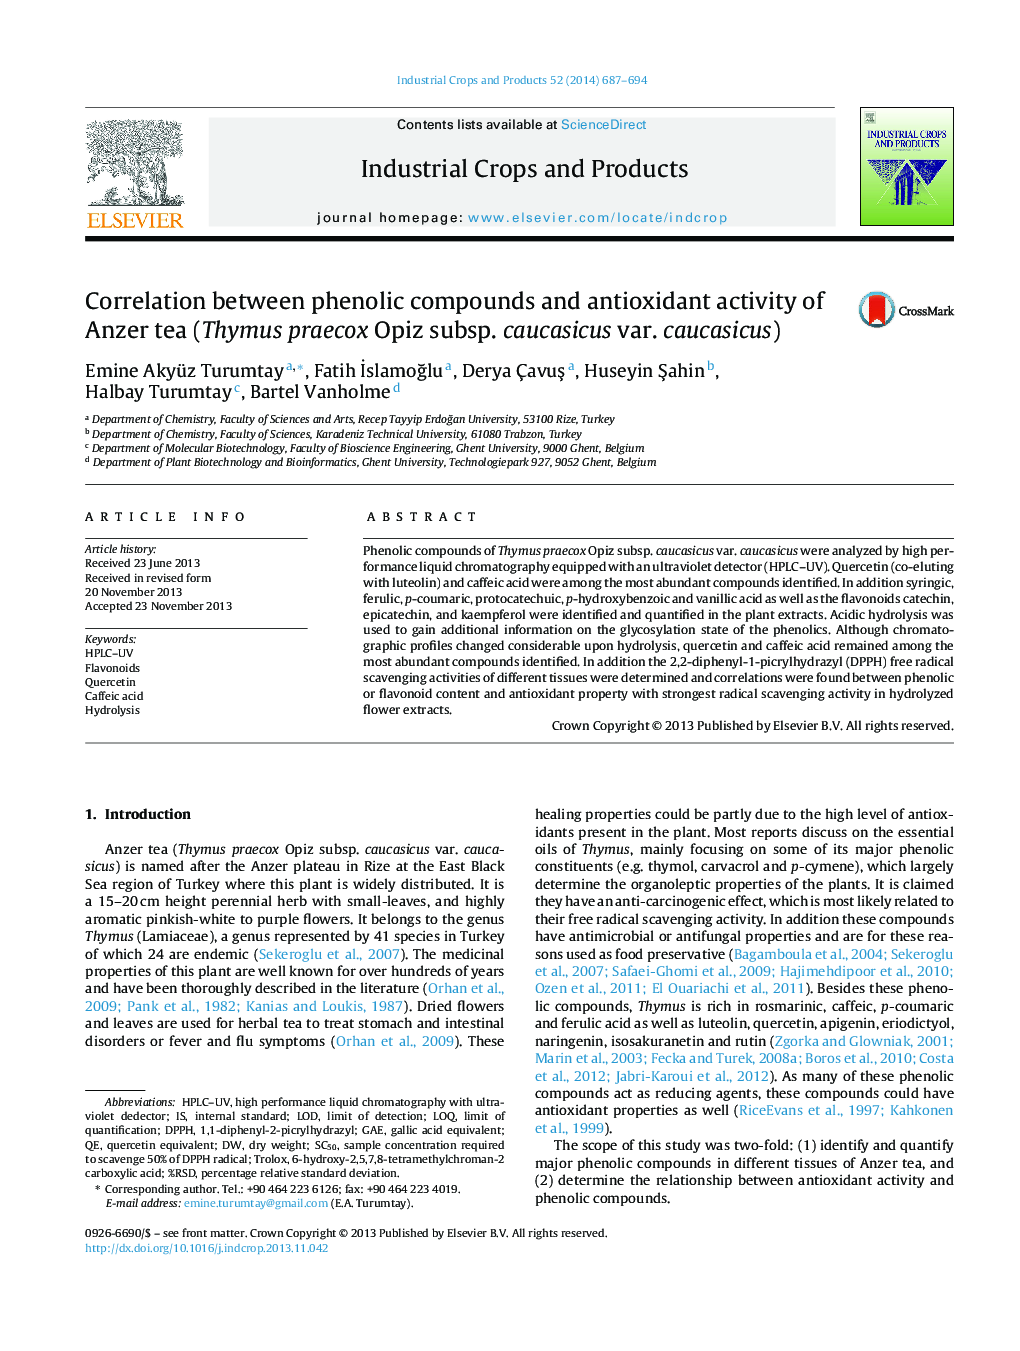 Correlation between phenolic compounds and antioxidant activity of Anzer tea (Thymus praecox Opiz subsp. caucasicus var. caucasicus)